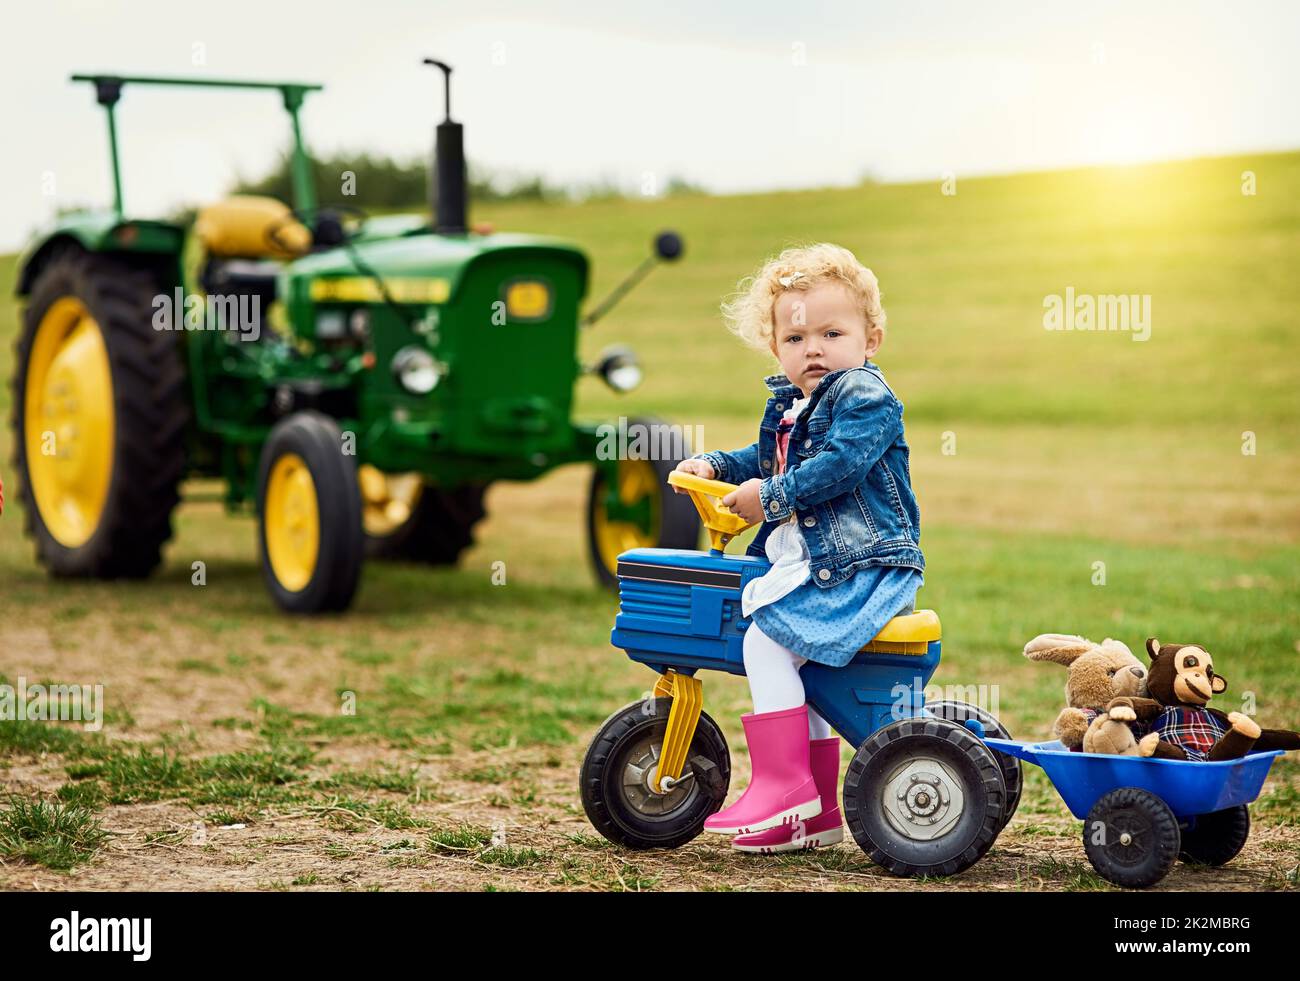 Ja, auch Mädchen fahren Lastwagen und Traktoren. Porträt eines entzückenden kleinen Mädchens, das ausgestopfte Tiere in einem Spielzeugauto um einen Bauernhof herumfährt. Stockfoto